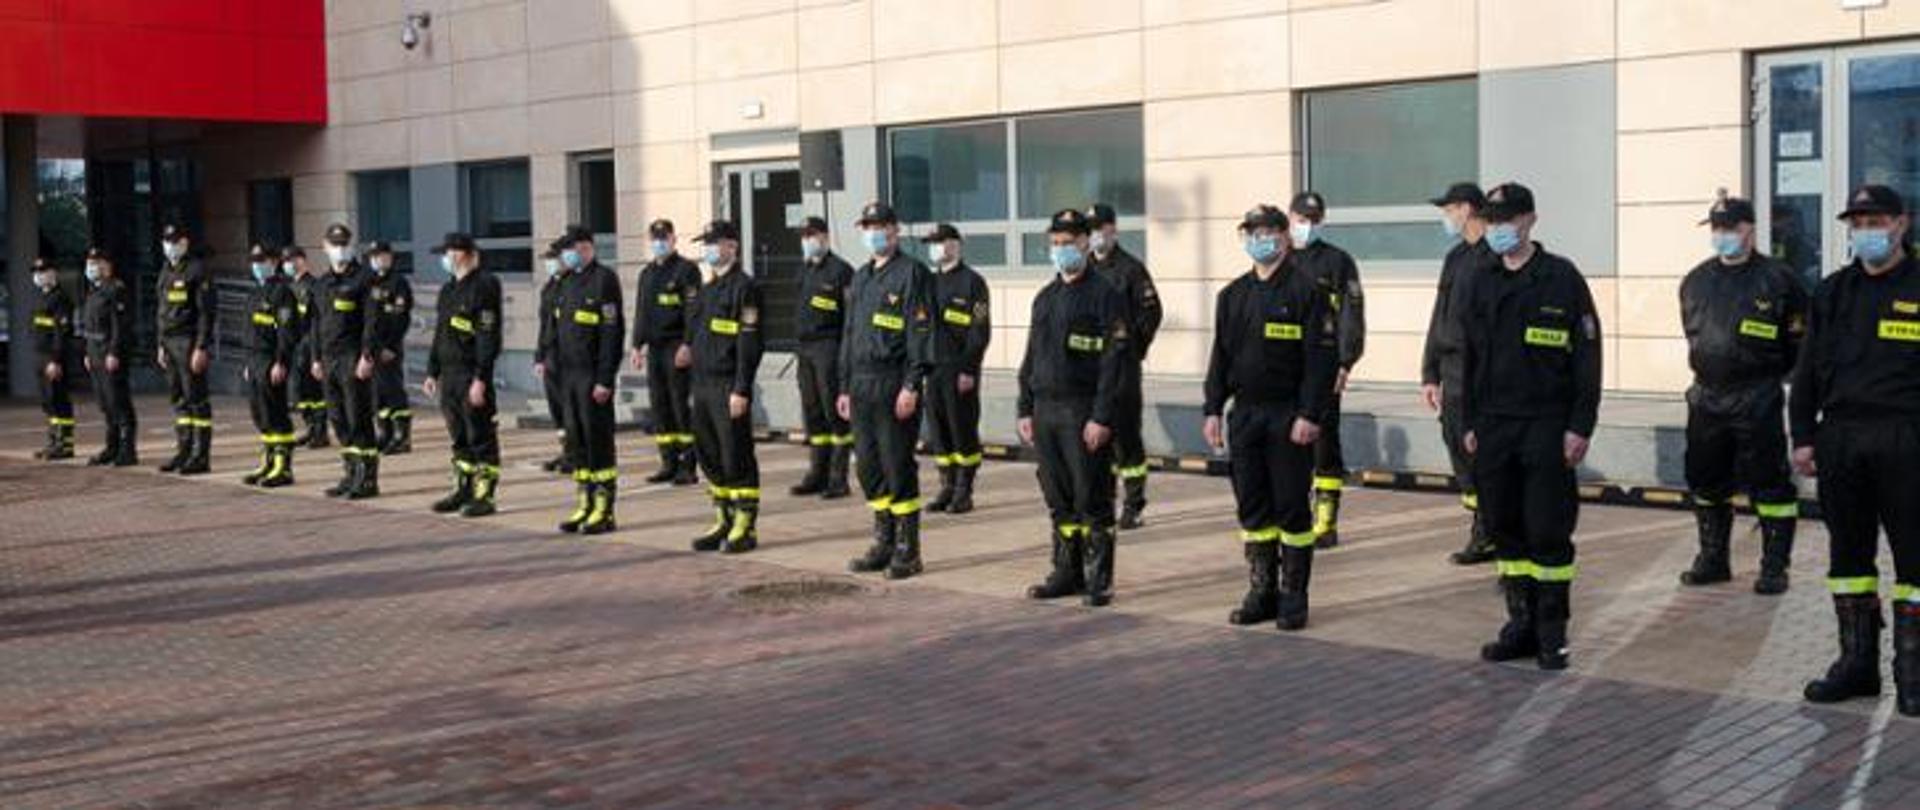 Zdjęcie przedstawia grupę strażaków stojących w dwuszeregu na tle budynku KW PSP w Warszawie